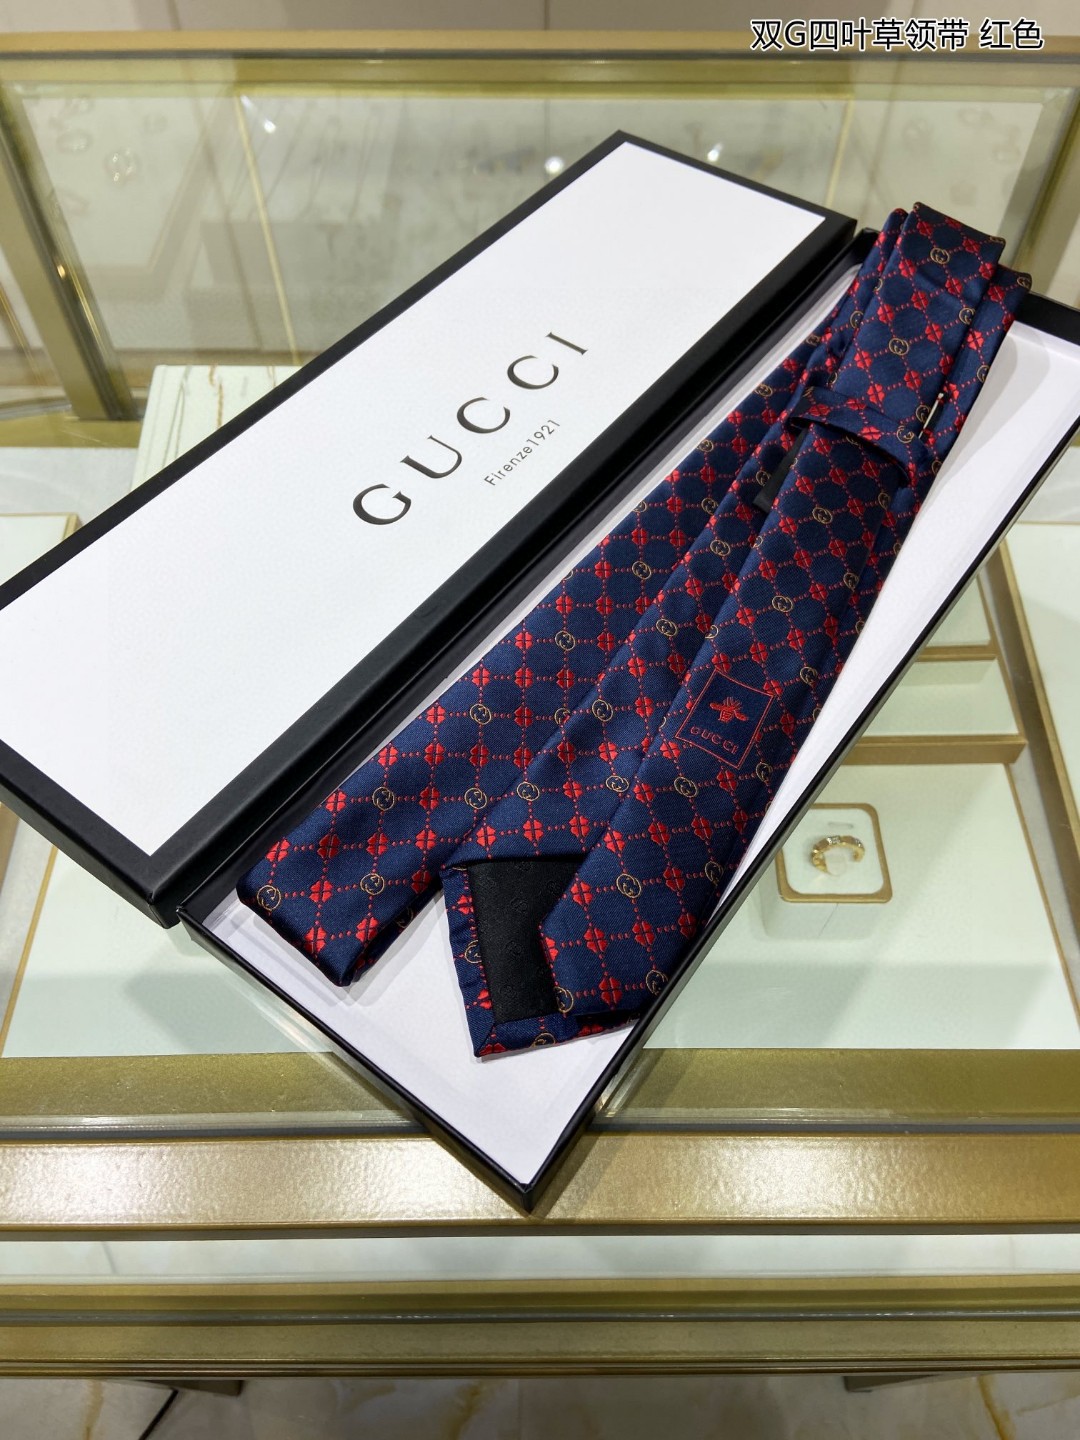 新款G家男士领带系列双G四叶草领带稀